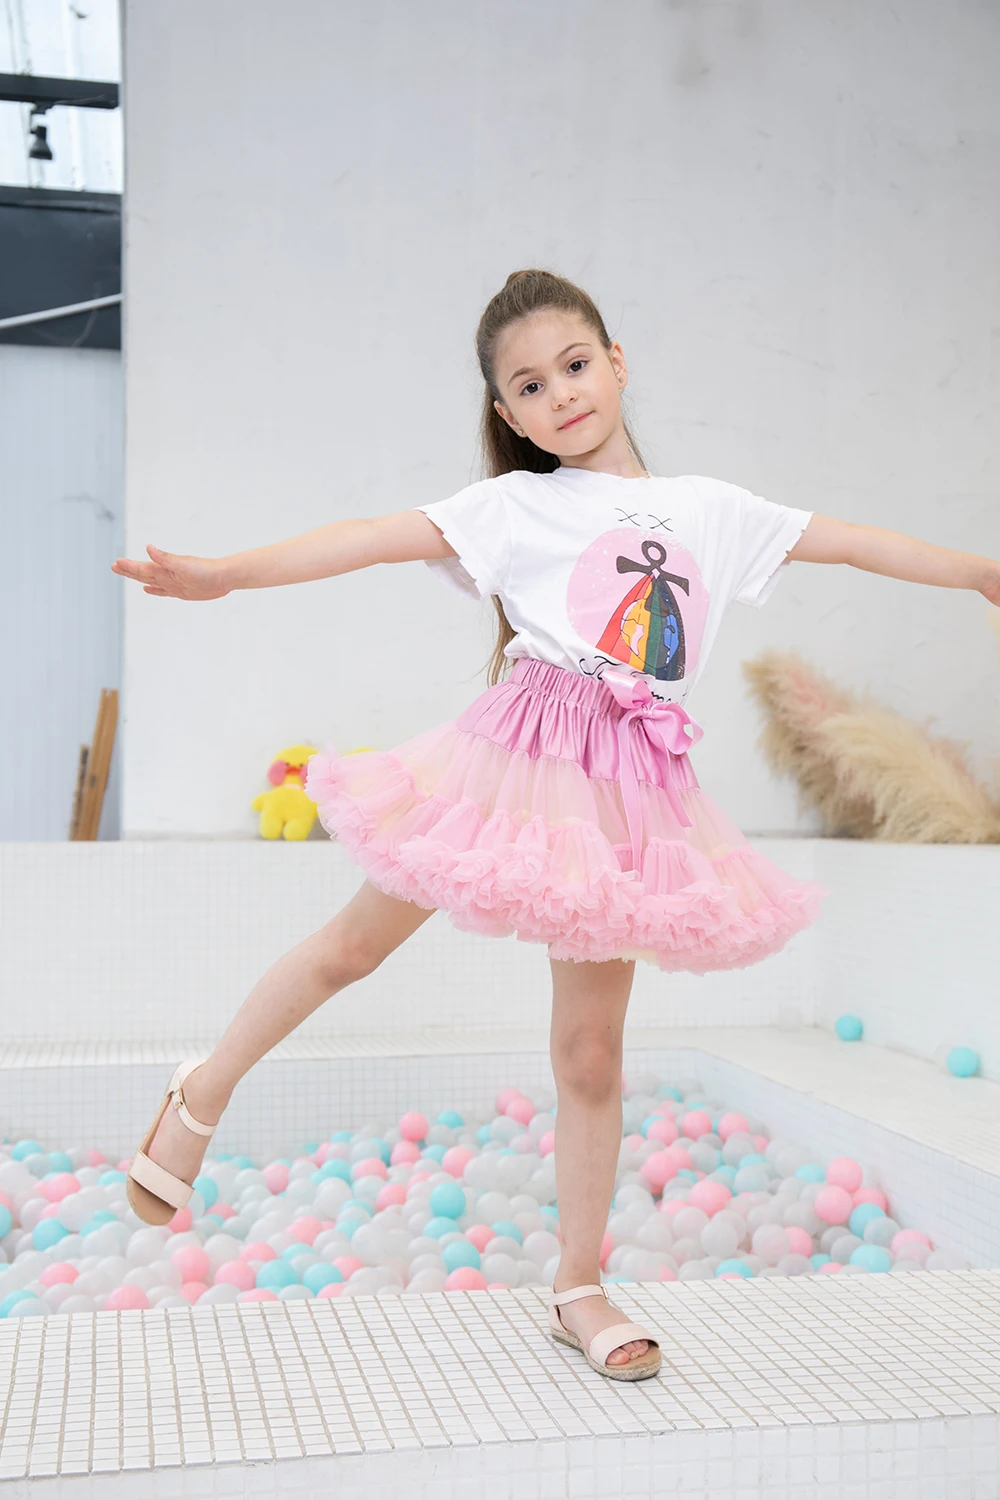 MERICAL Baby Clothes,Girls Kids Baby Dance Fluffy Tutu Skirt Pettiskirt Ballet Fancy Costume